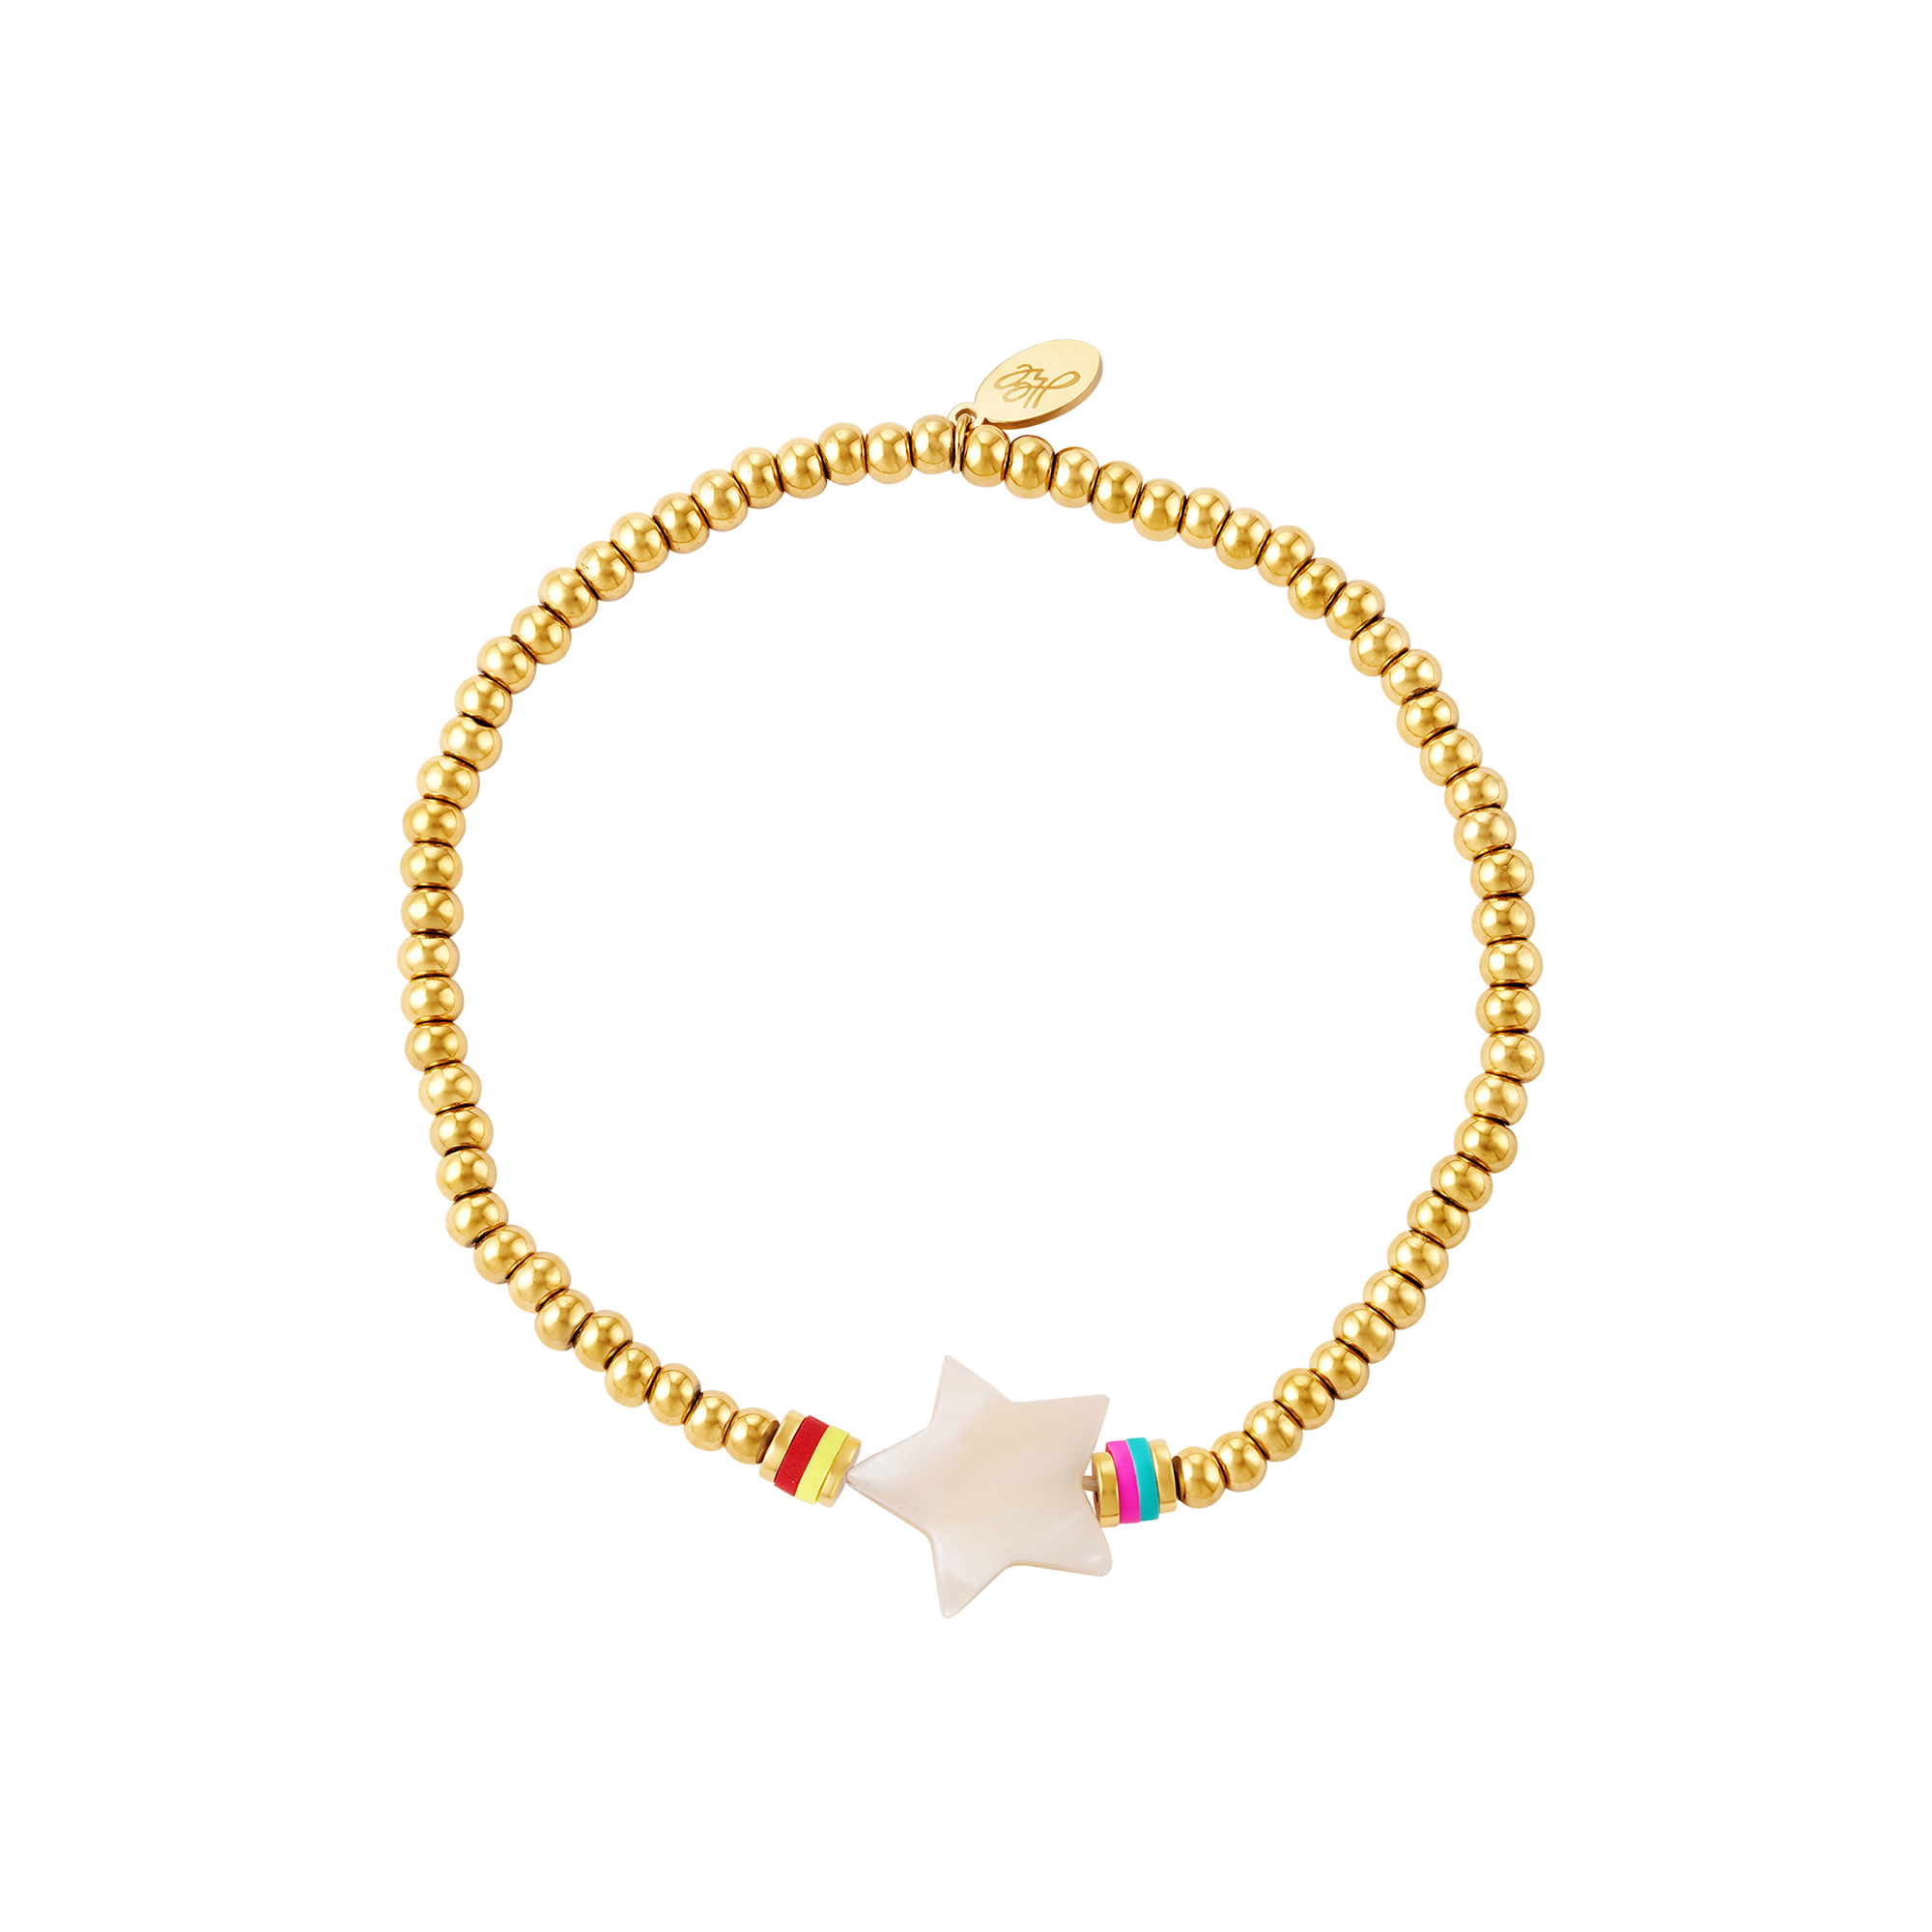 Beads & stars armband - #summergirls-kollektion